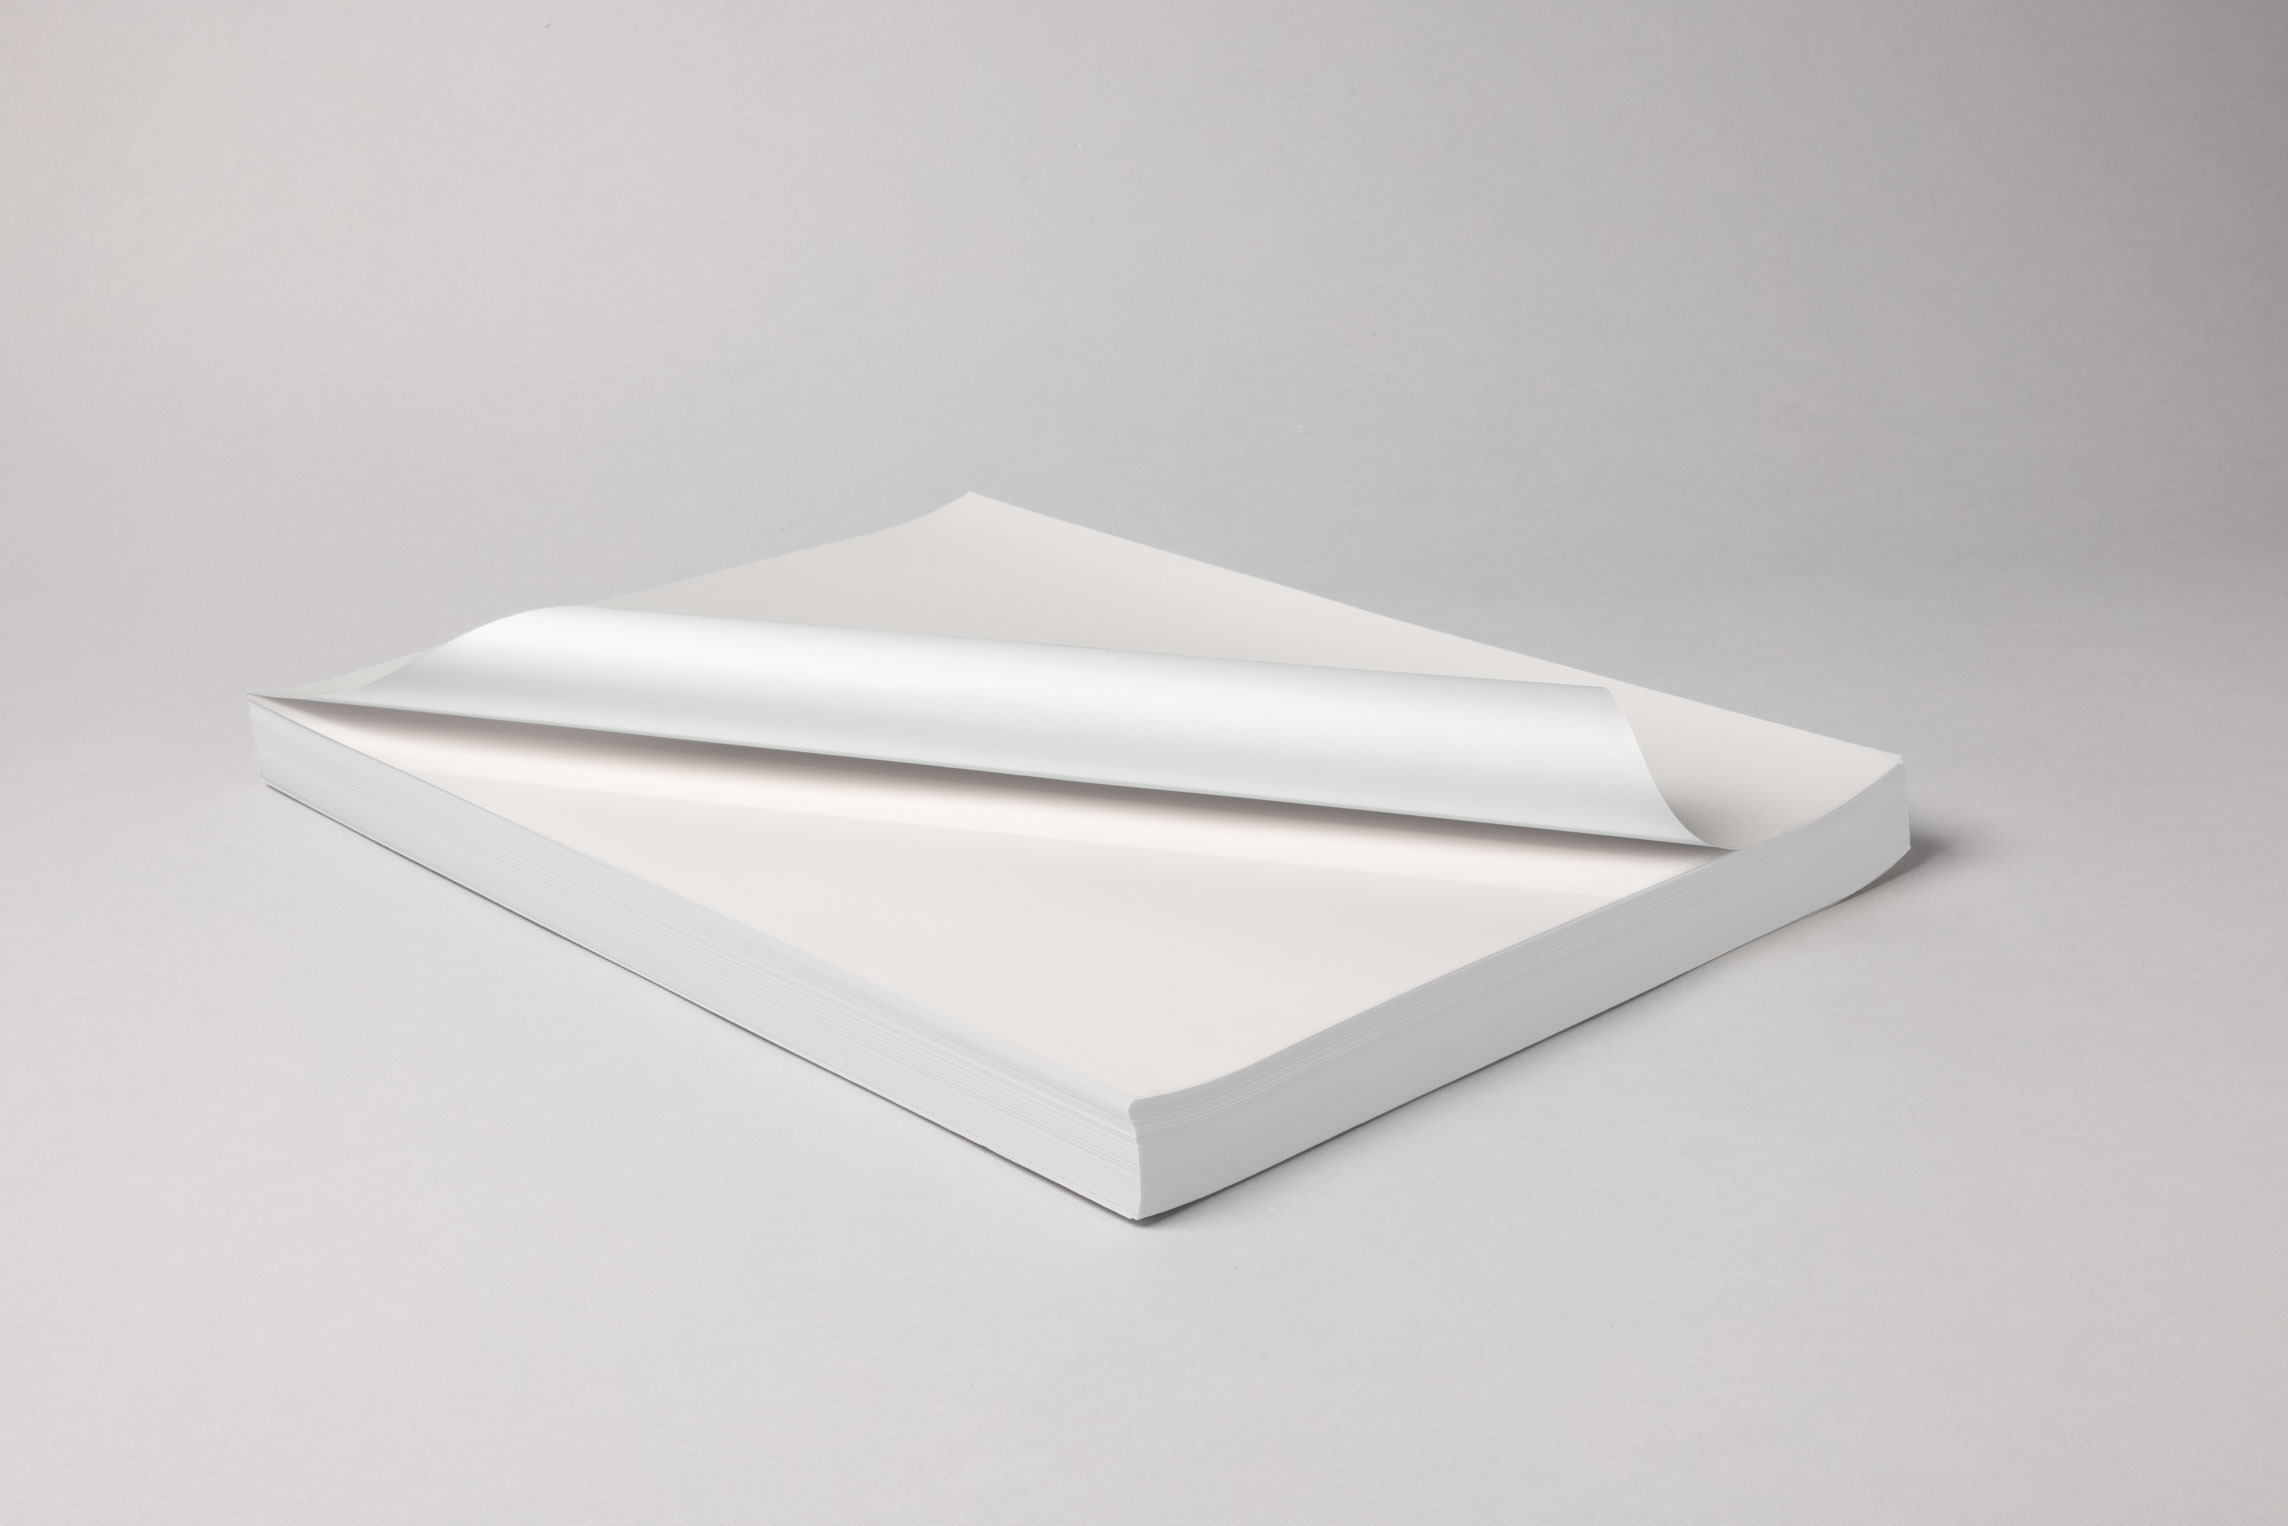 Ceramictoner 贴花纸 MZCal 适用于贴花纸的生产。它适用于所有应用，并提供 DIN A4、DIN A3 或 DIN A3 超大规格。